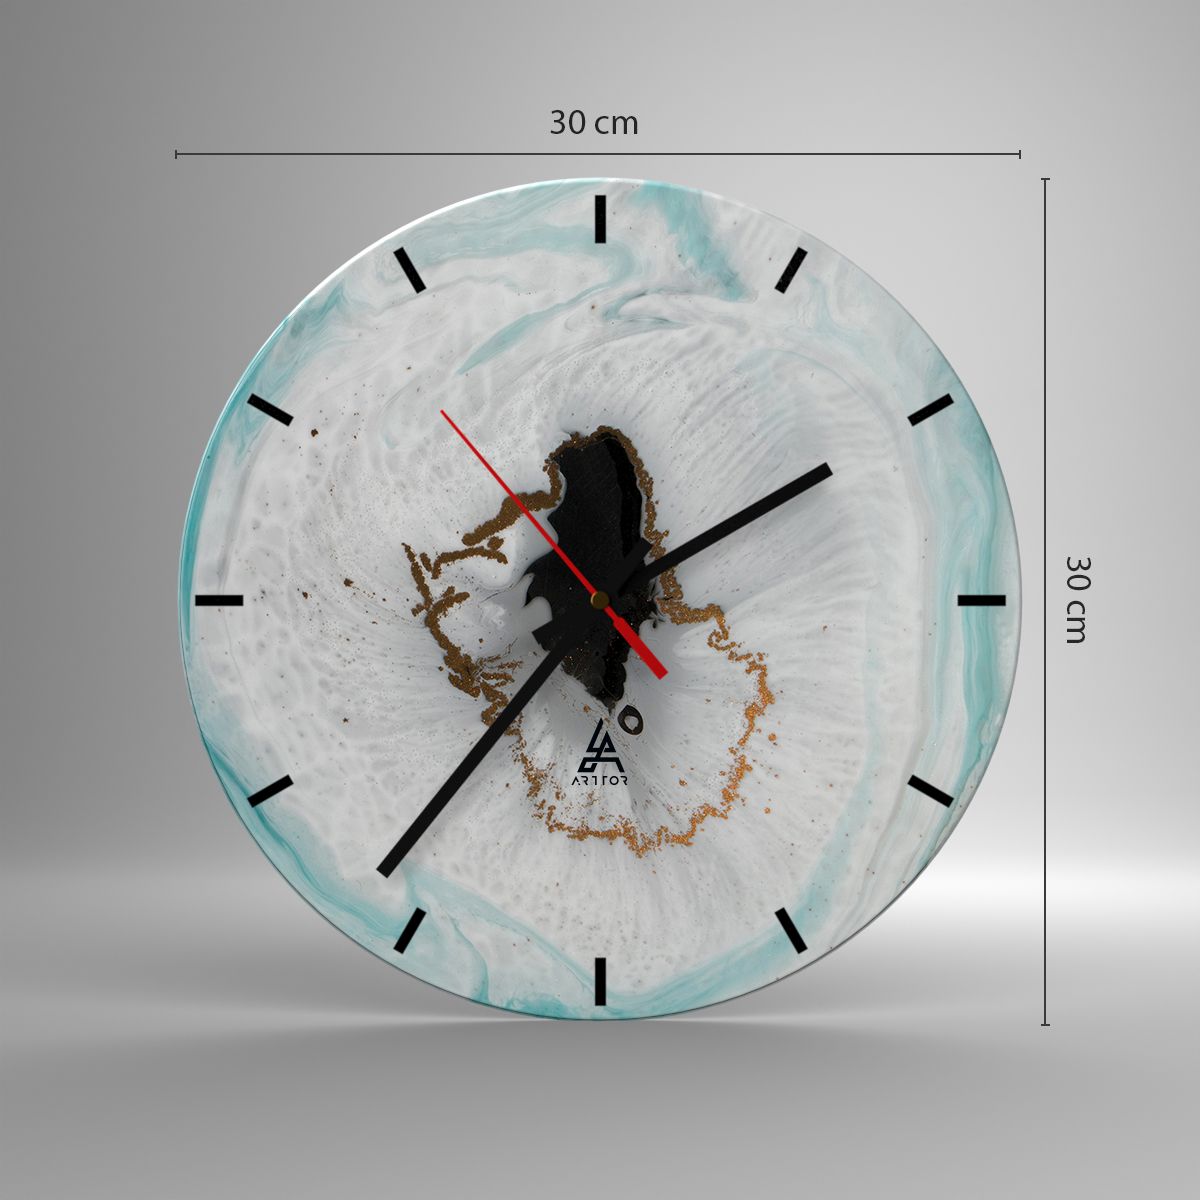 Orologio da parete Arttor - Penetrare all'interno - Quadrante con trattini,  Forma: Cerchio - 30x30 cm - Astrazione, Arte, Calcolo